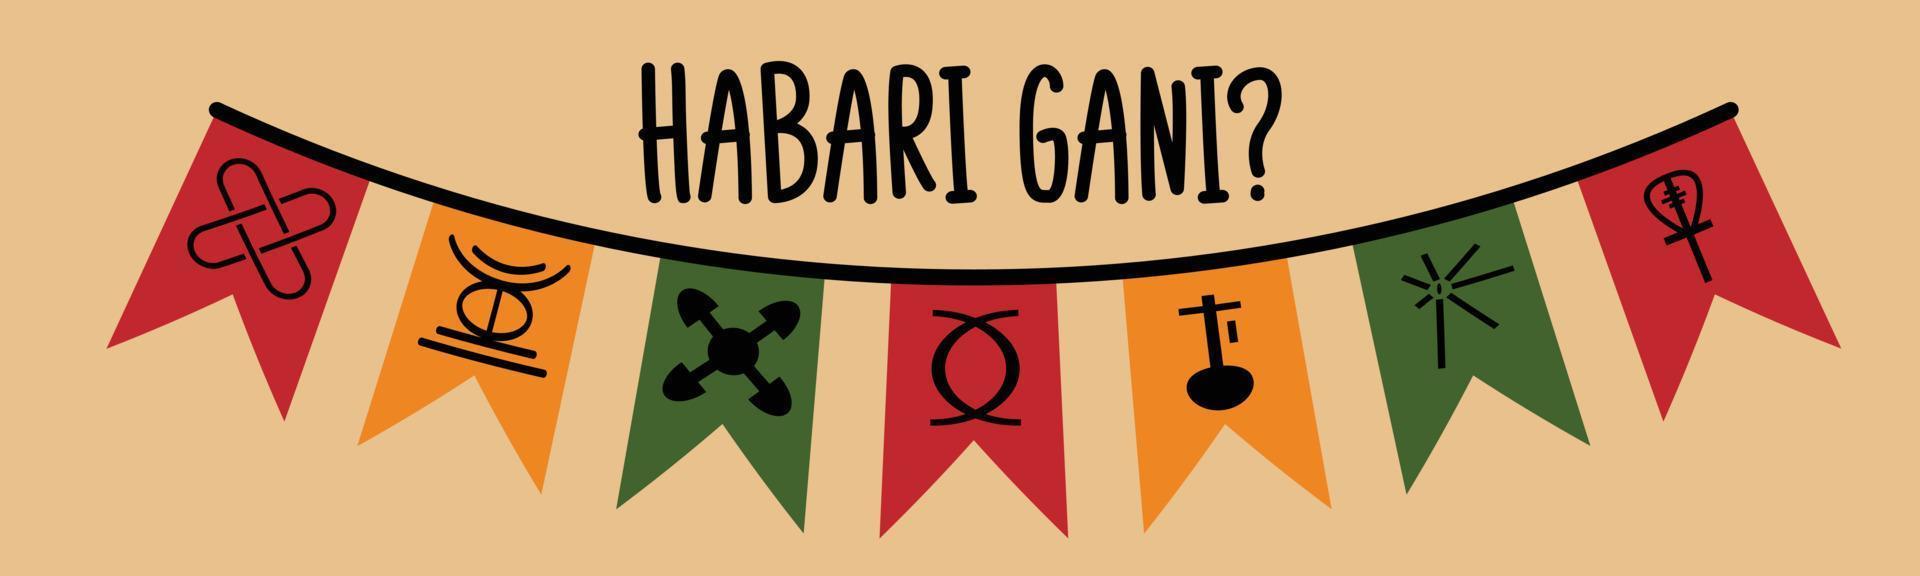 habari gani - Swahili-Übersetzung - was gibt es Neues. traditionelle Grußformel für das Kwanzaa-Festival. festliche Fahnen mit sieben Prinzipien von Kwanzaa-Symbolen. vektor